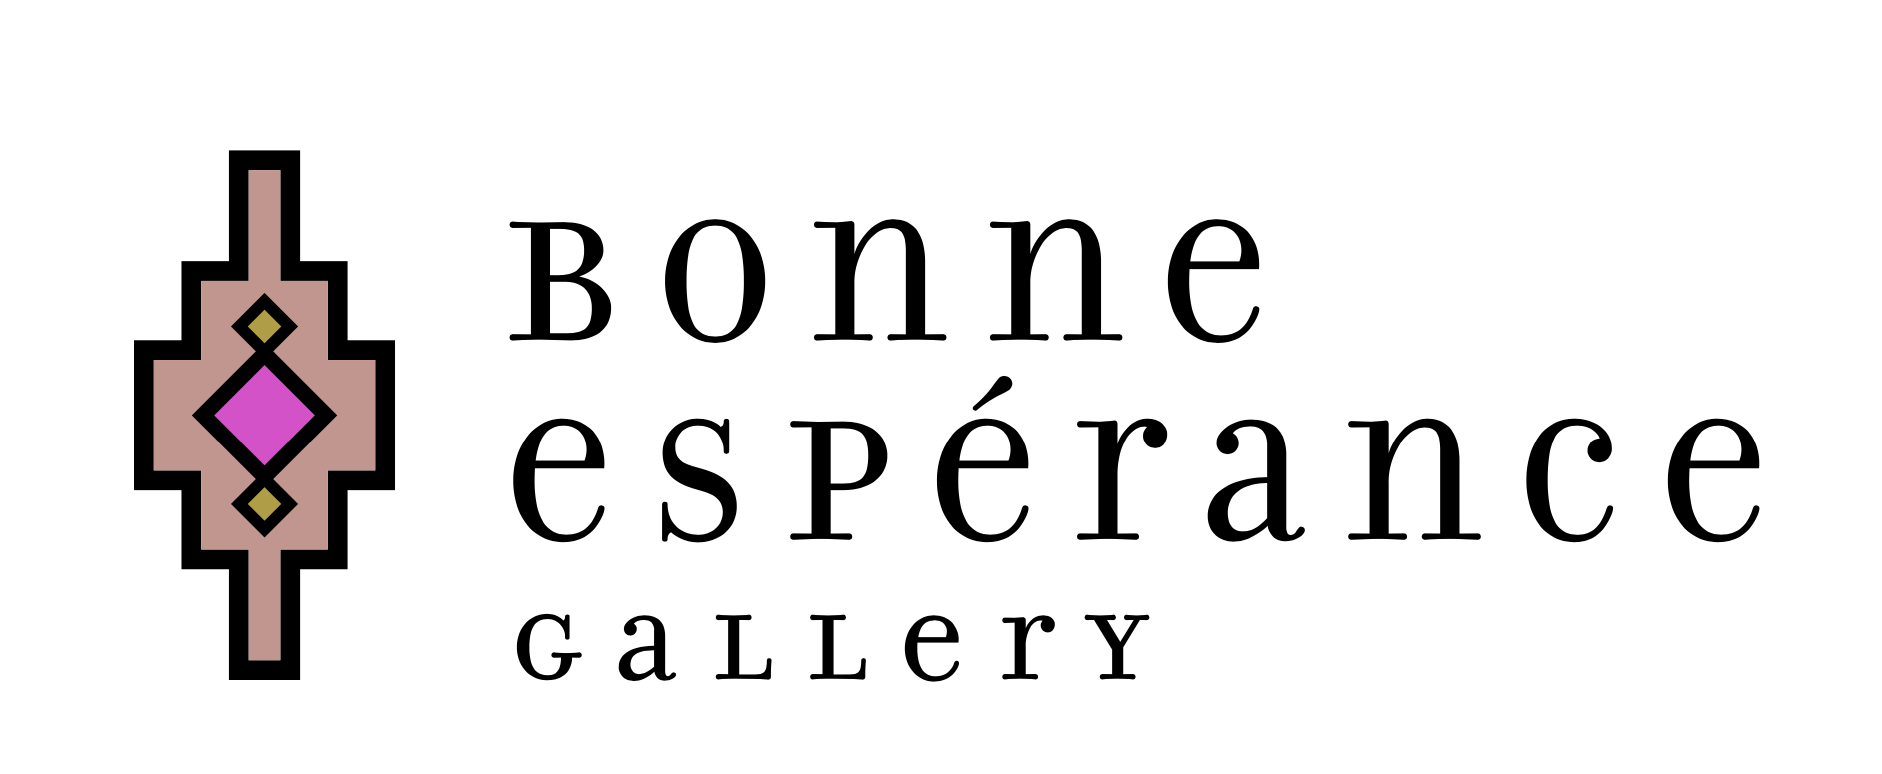 Bonne Espérance Gallery